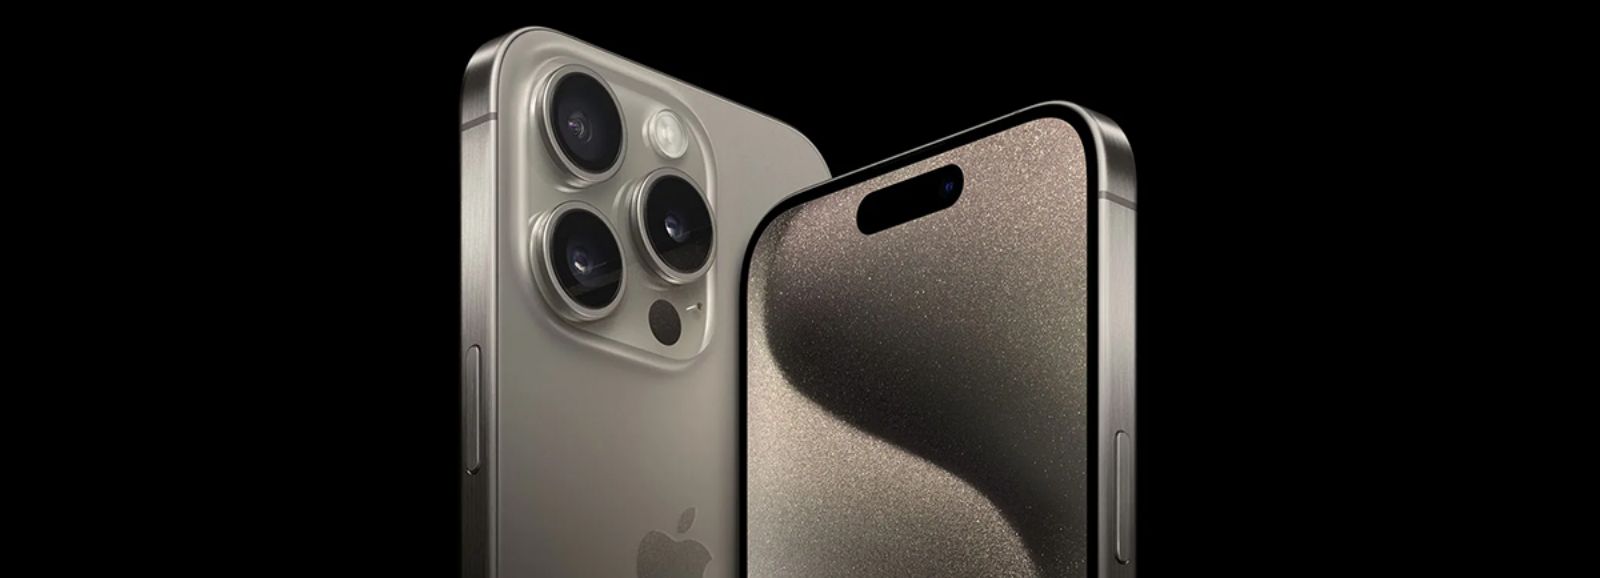 So sánh pin iPhone 11 Pro Max và 12 Pro Max - Lựa chọn nào tốt hơn? -  Thegioididong.com